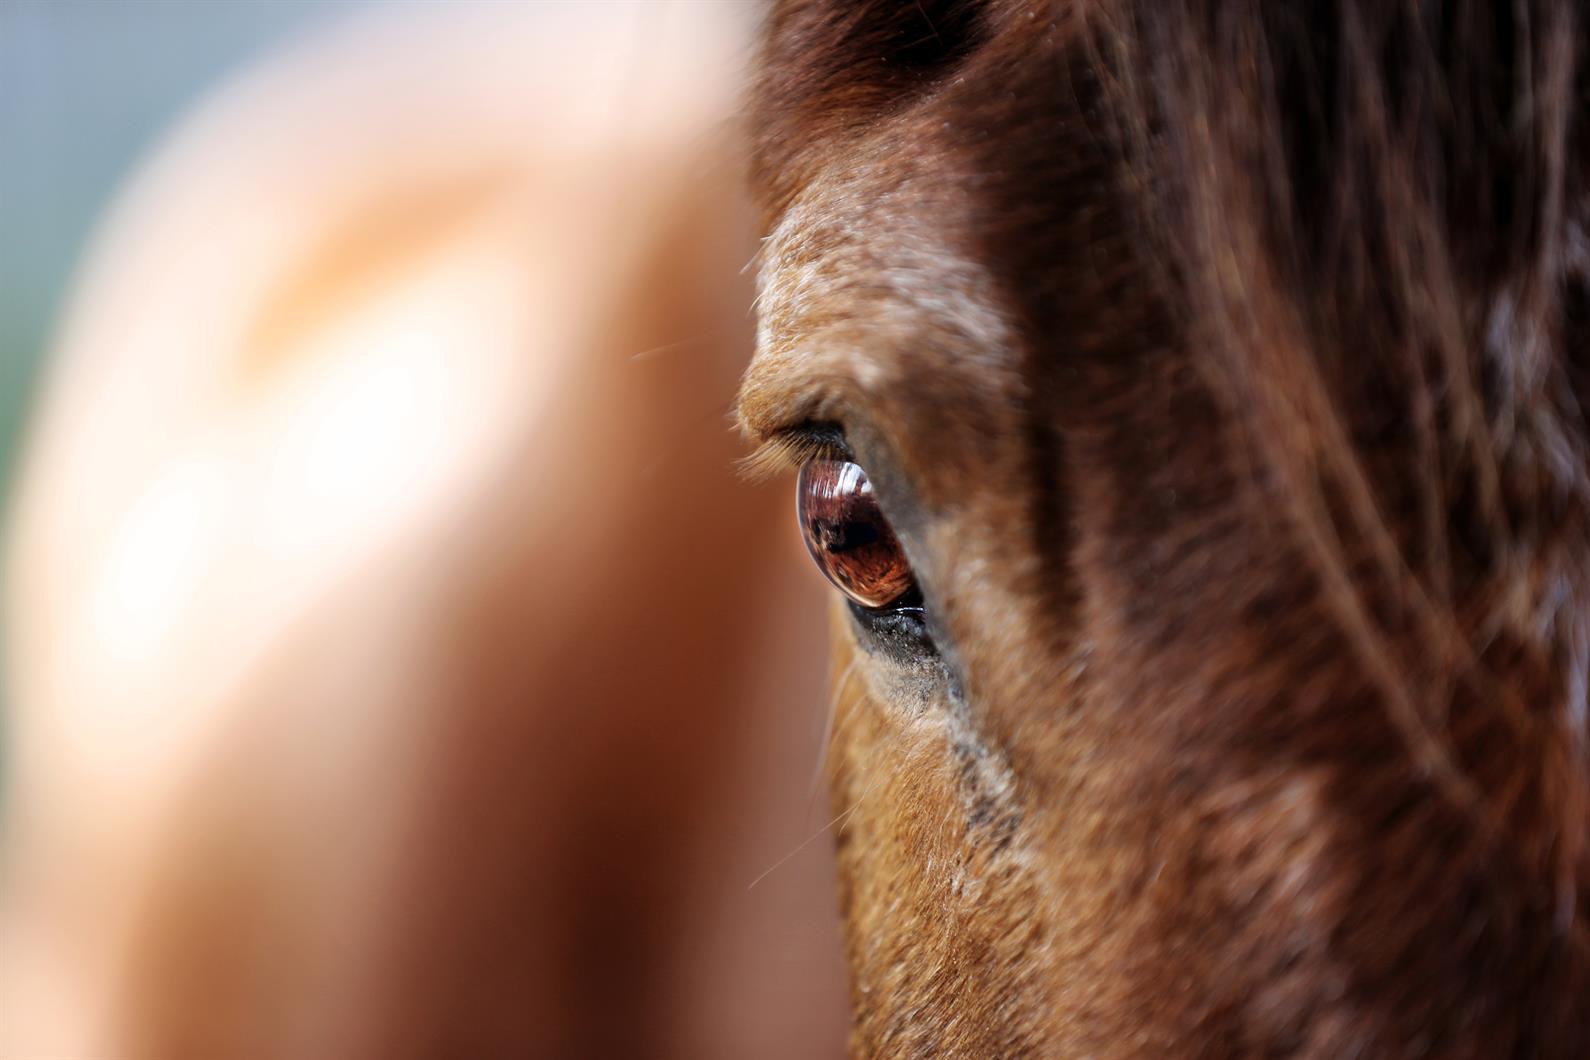 Alternatives To Blinding Horses